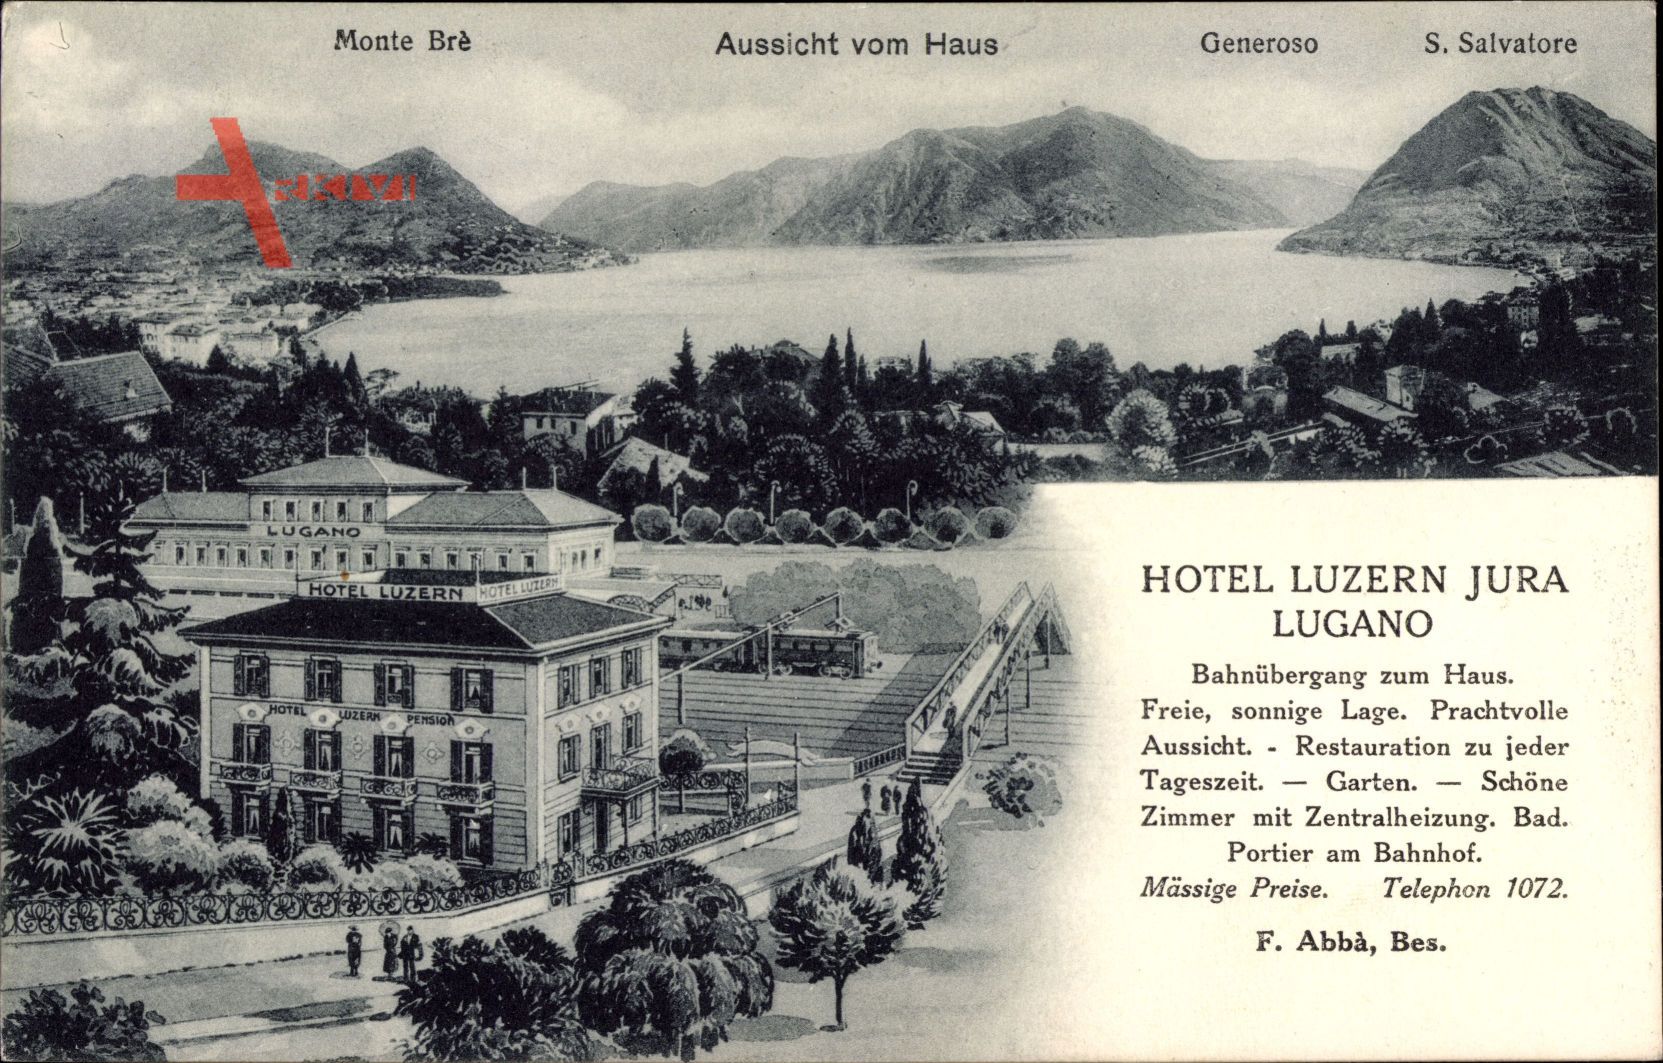 Lugano Kt. Tessin Schweiz, Hotel Luzern Jura, Monte Bré, Generoso um 1927